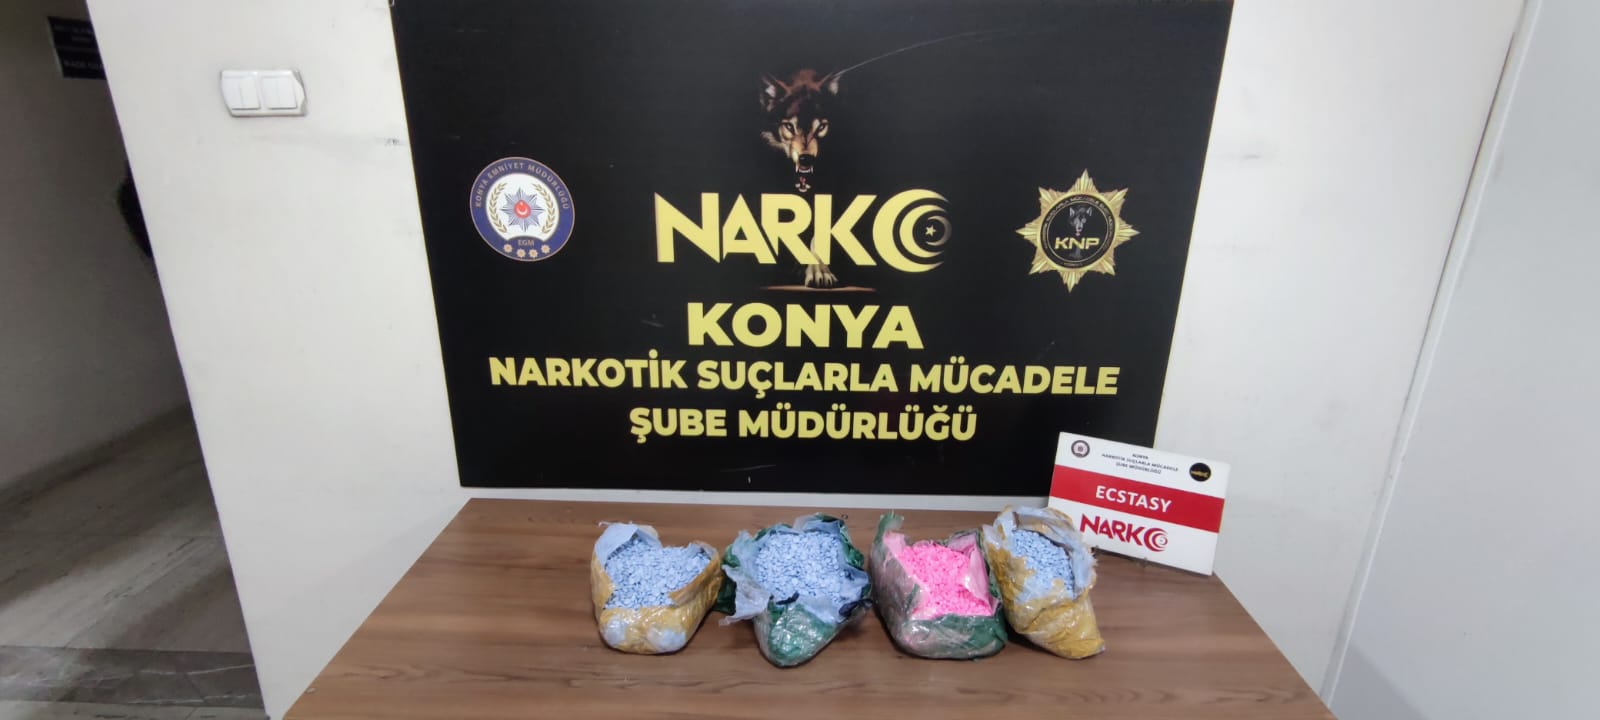 Konya’da ev, iş yeri ve araçlar tek tek arandı! 18 gözaltı 7 tutuklama